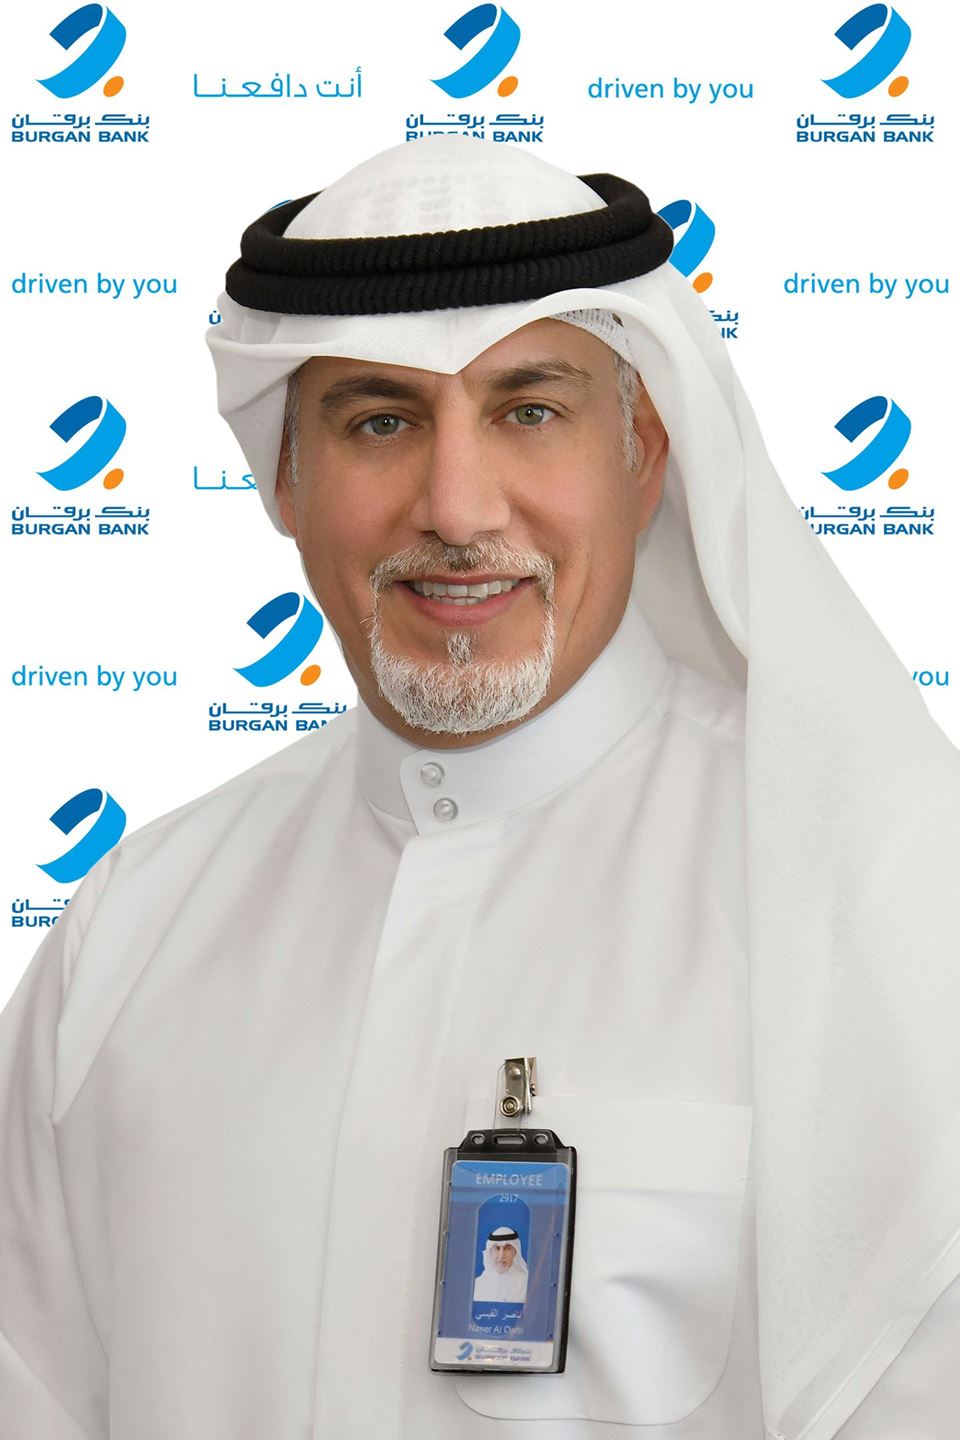 Mr. Naser Al-Qaisi, Chief Retail Banking Officer at Burgan Bank